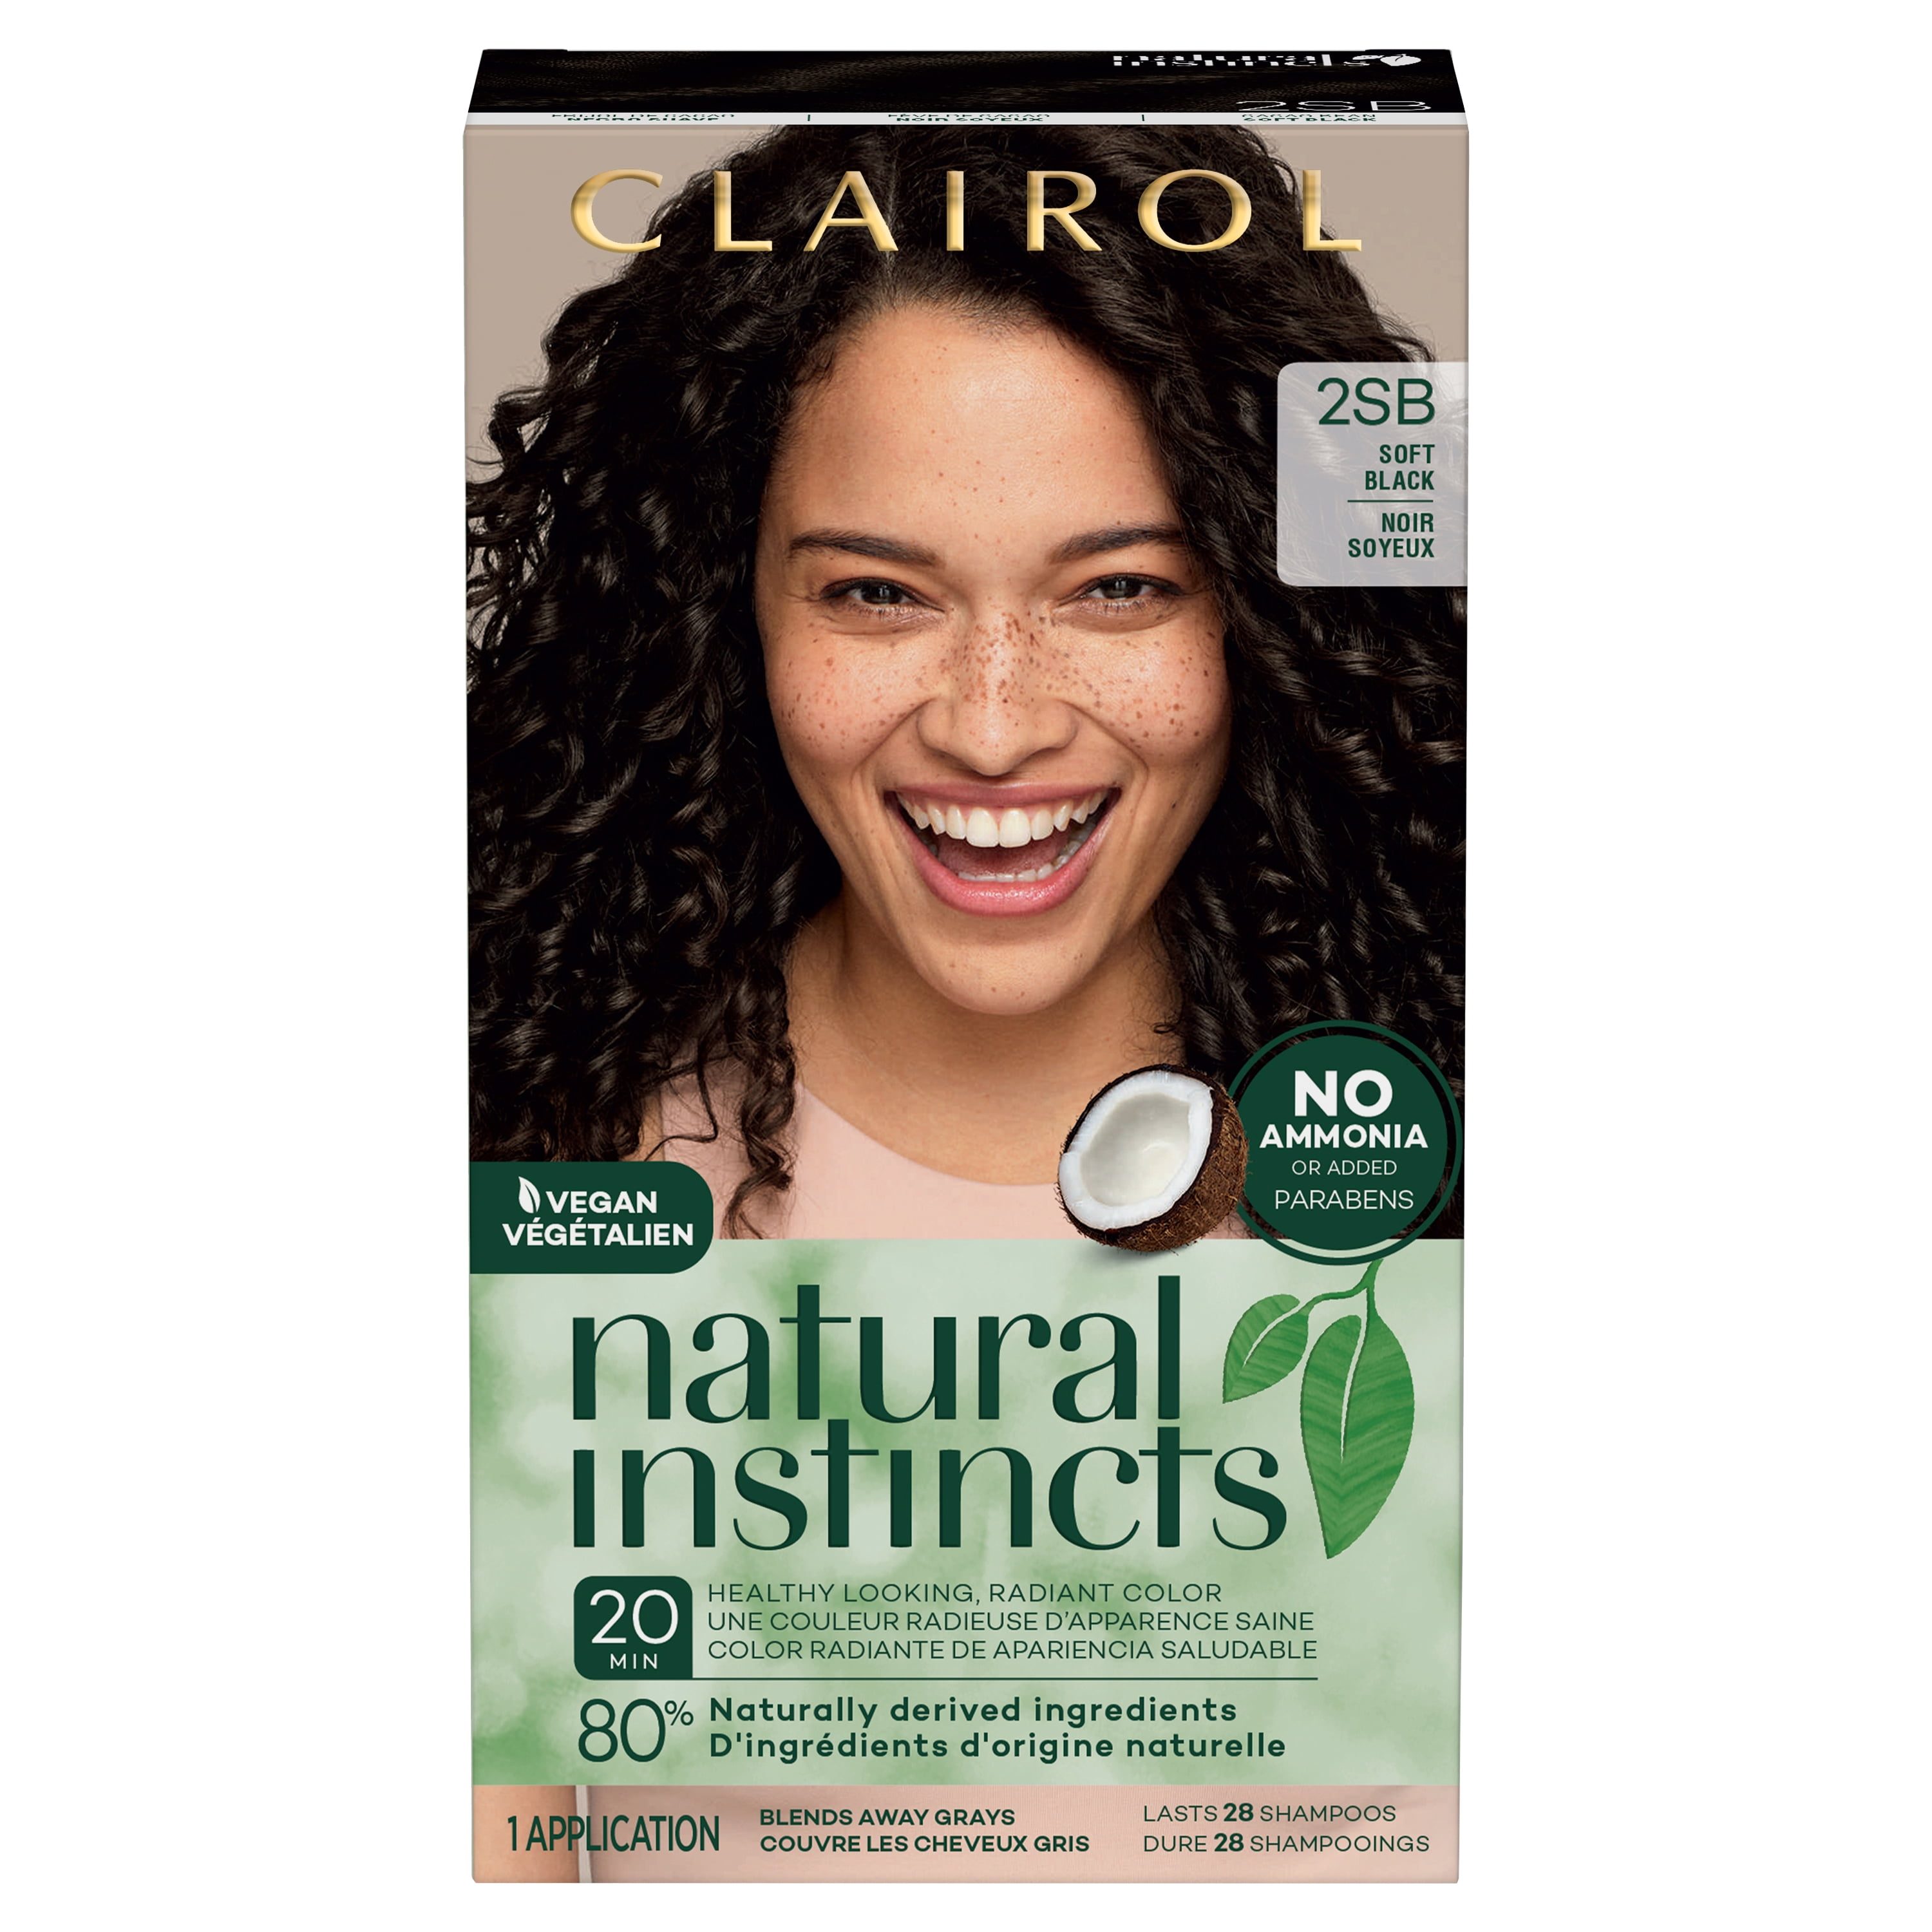 Clairol Natural Instincts Demi-Permanent Hair Color Crème Dye, 2SB Soft  Black, 1 Application 